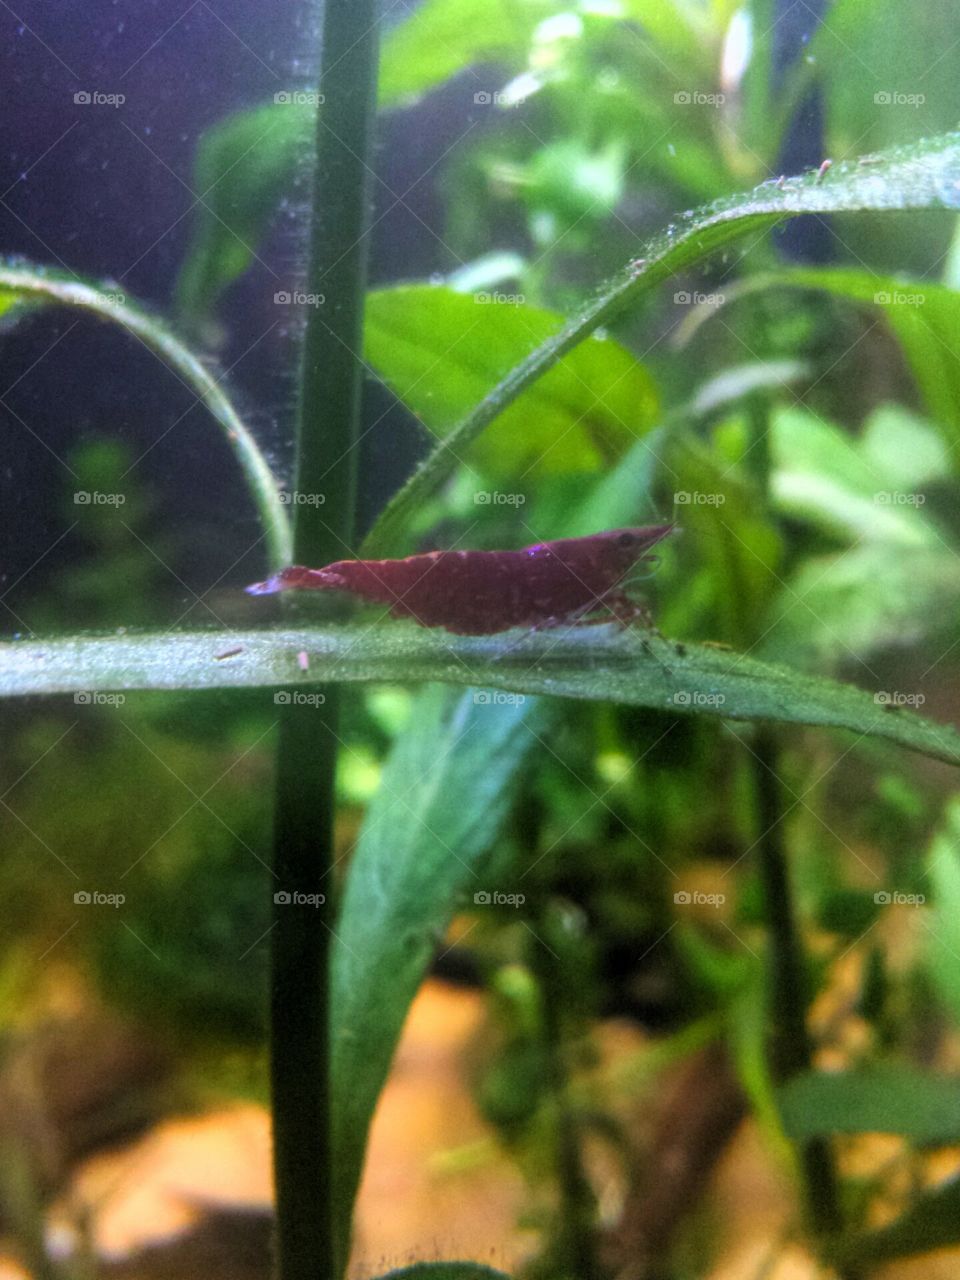 maroon shrimp